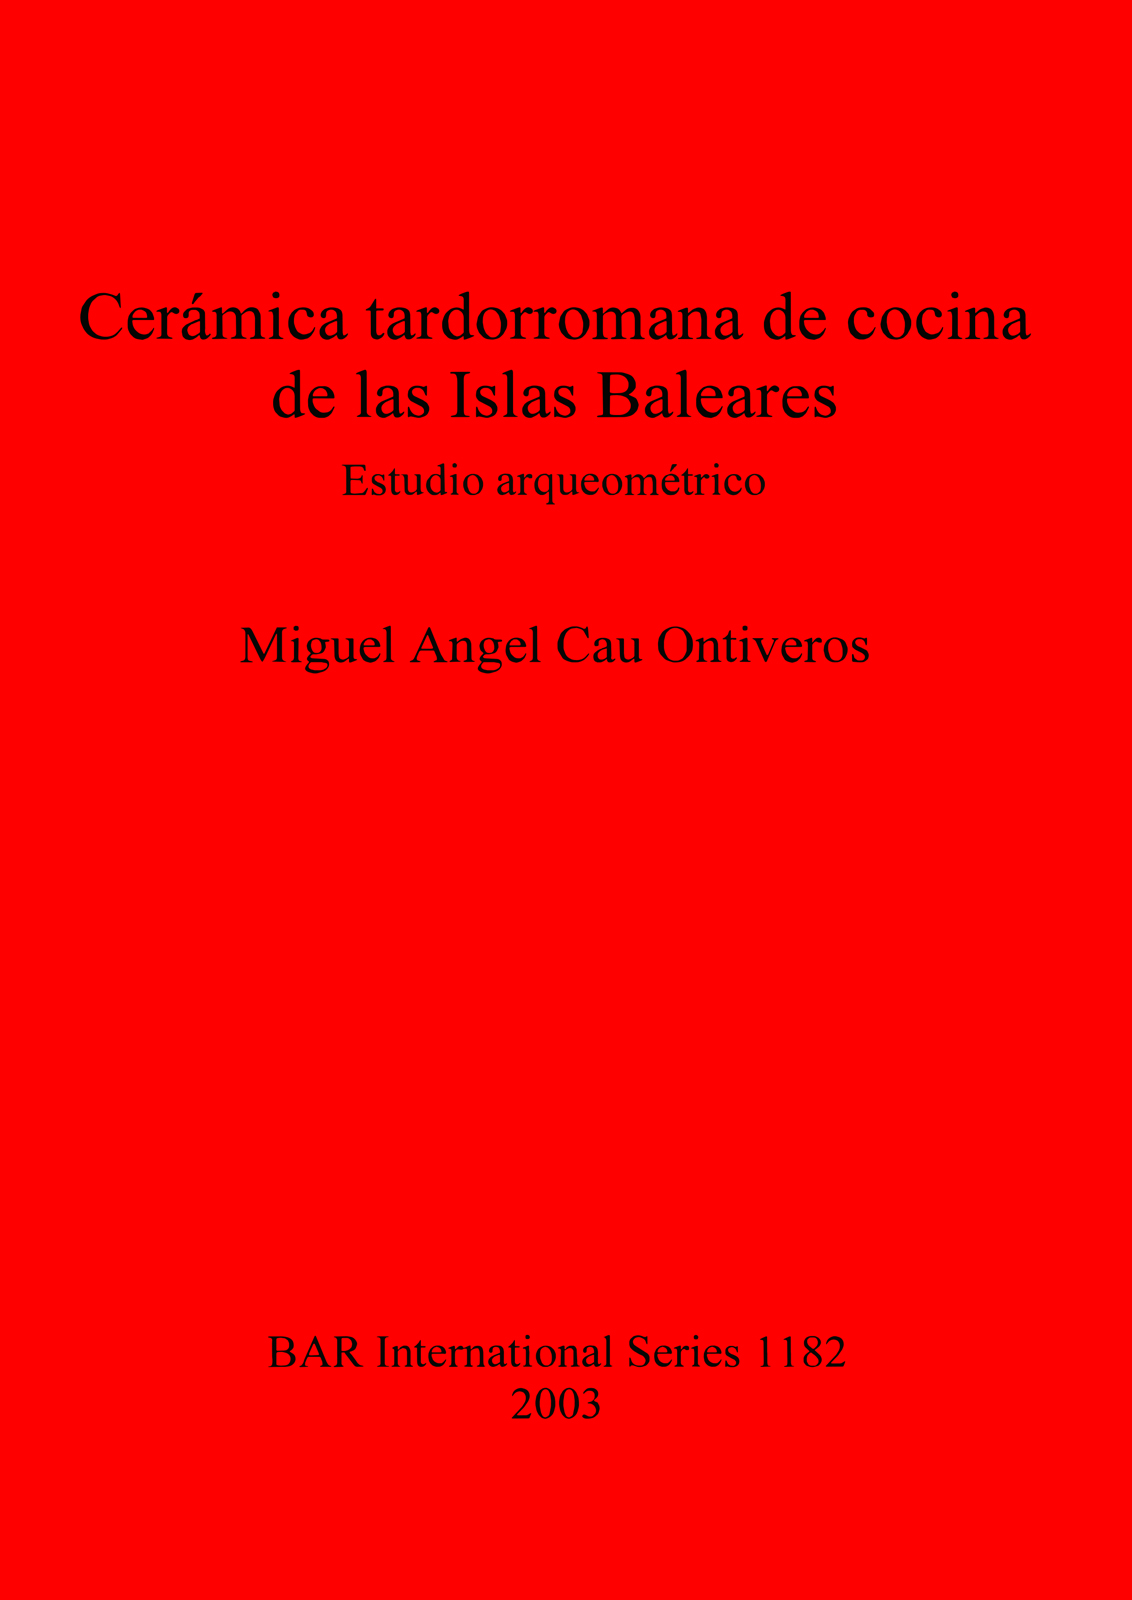 Imagen de portada del libro Cerámica tardorromana de cocina de las Islas Baleares